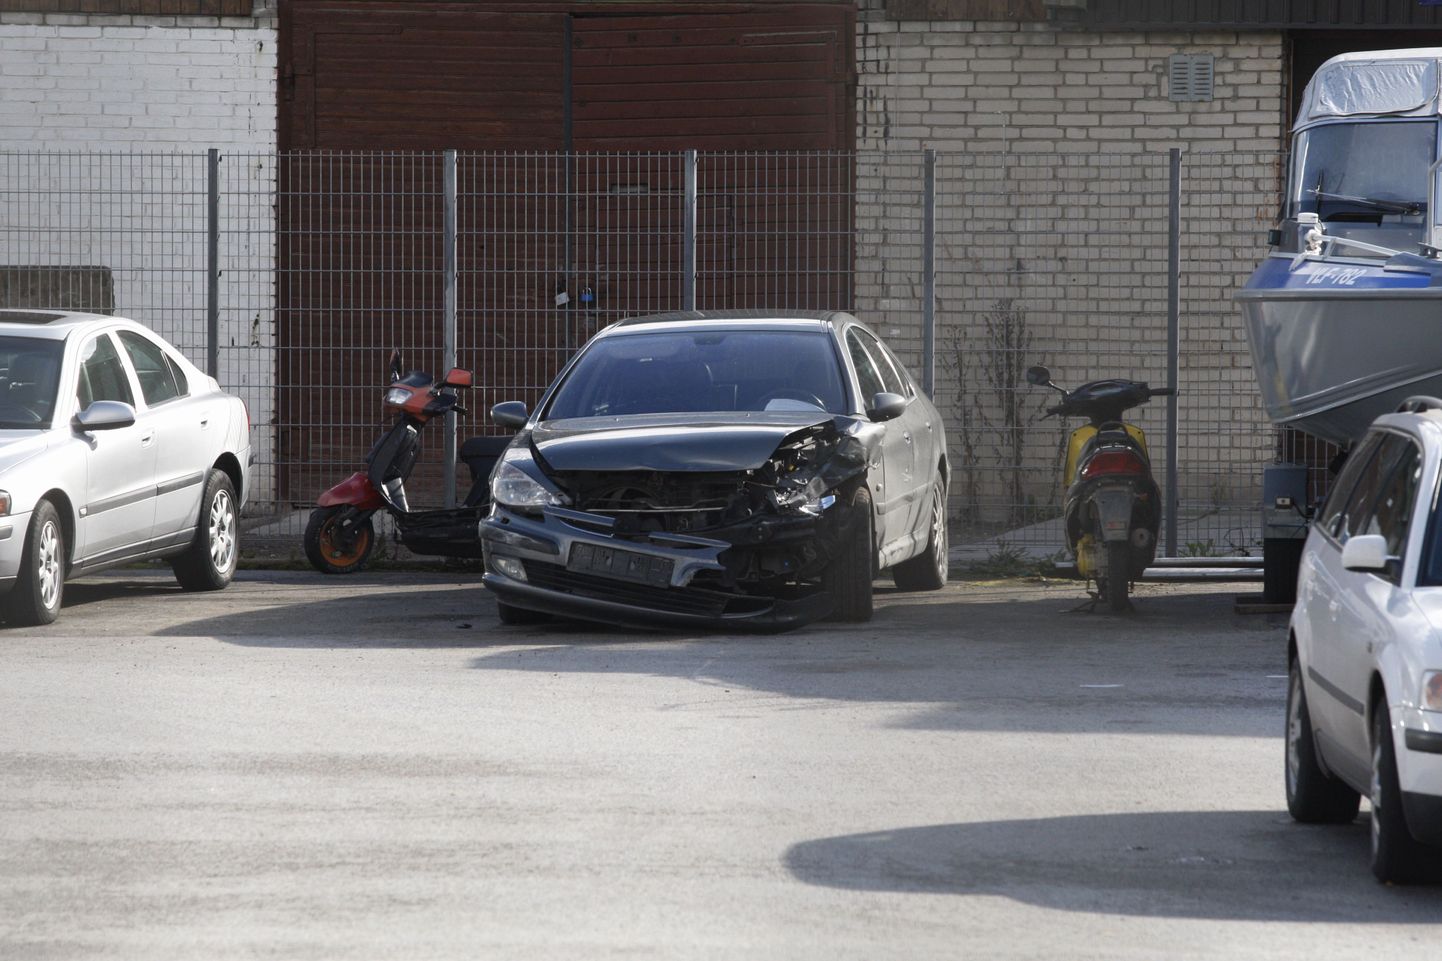 Selle Peugeot 607-ga tegi narkojõugu liige Tartus mitu avariid. Politsei jälitas sõidukit ligi paarkümmend kilomeetrit, kuni see püstolilaskudega peatuma sunniti.